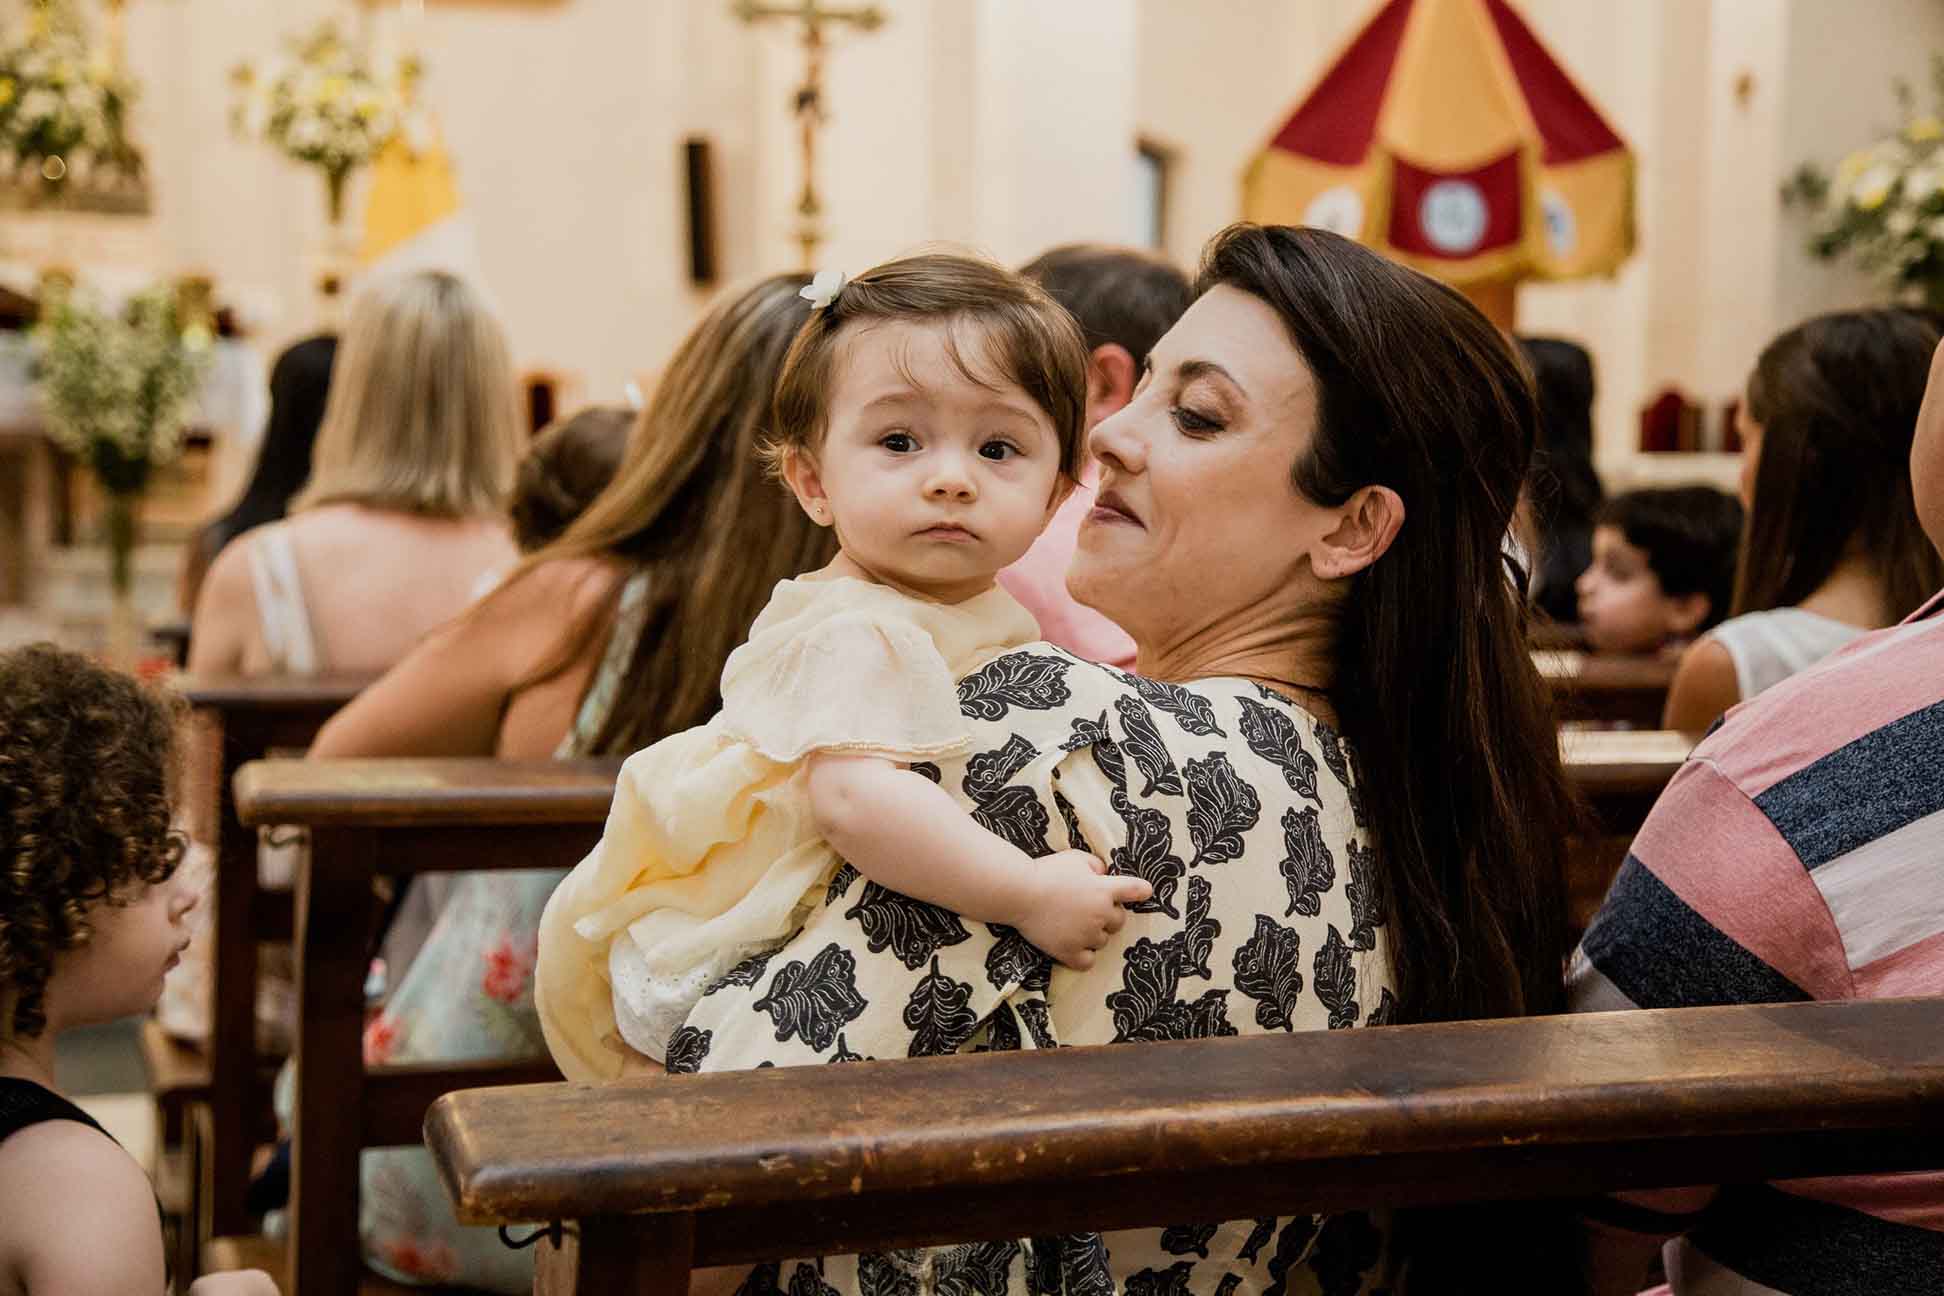 Fotos del bautismo de Guada y el cumple de cuarenta de Vicky en Rosario realizadas por Bucle Fotografías Flor Bosio y Caro Clerici